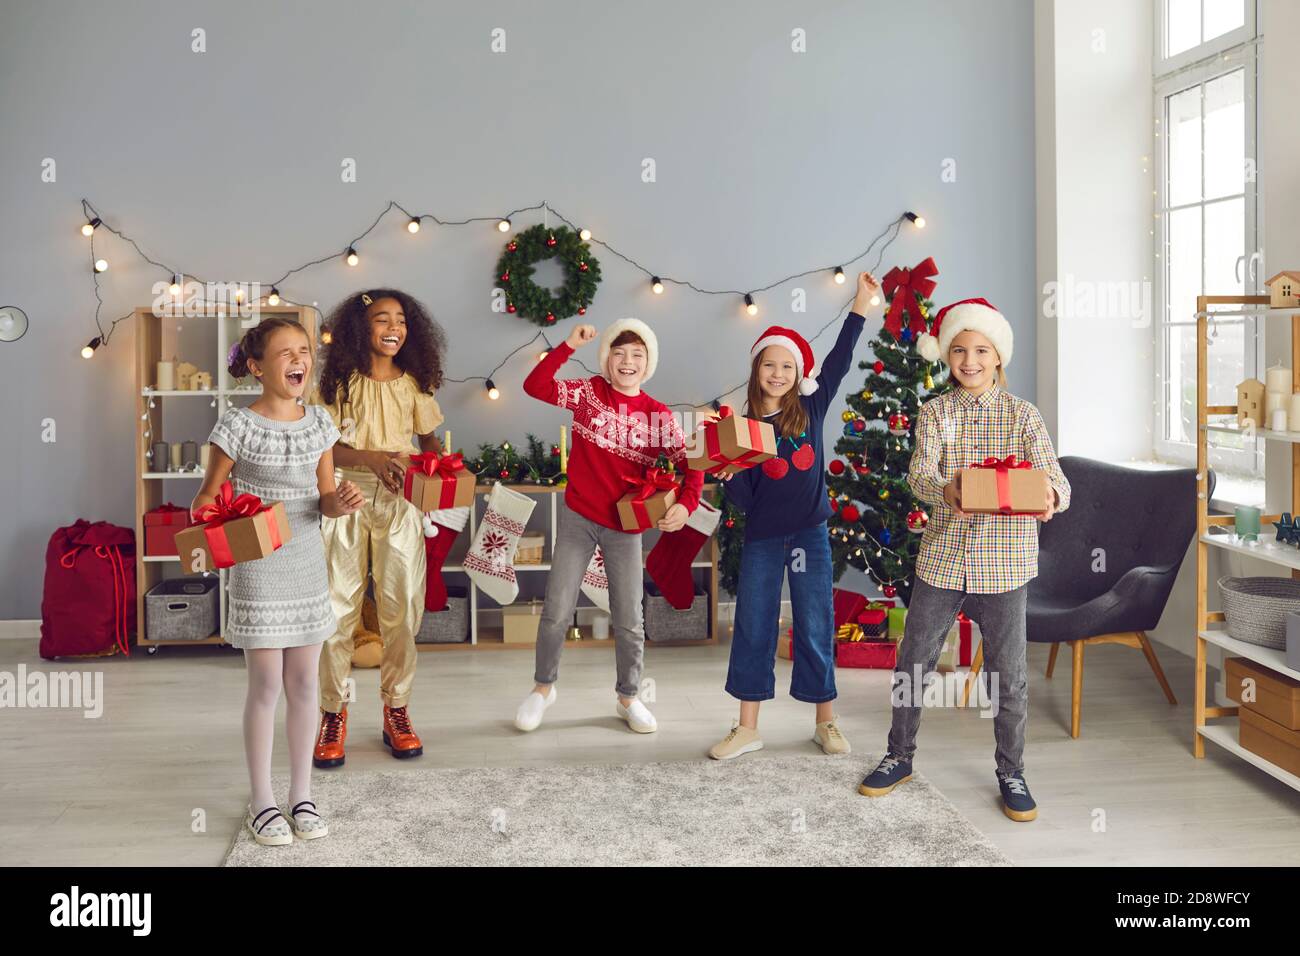 Gli amici dei bambini di razza mista saltano insieme, tenendo i regali e gioendo che Natale è venuto. Foto Stock